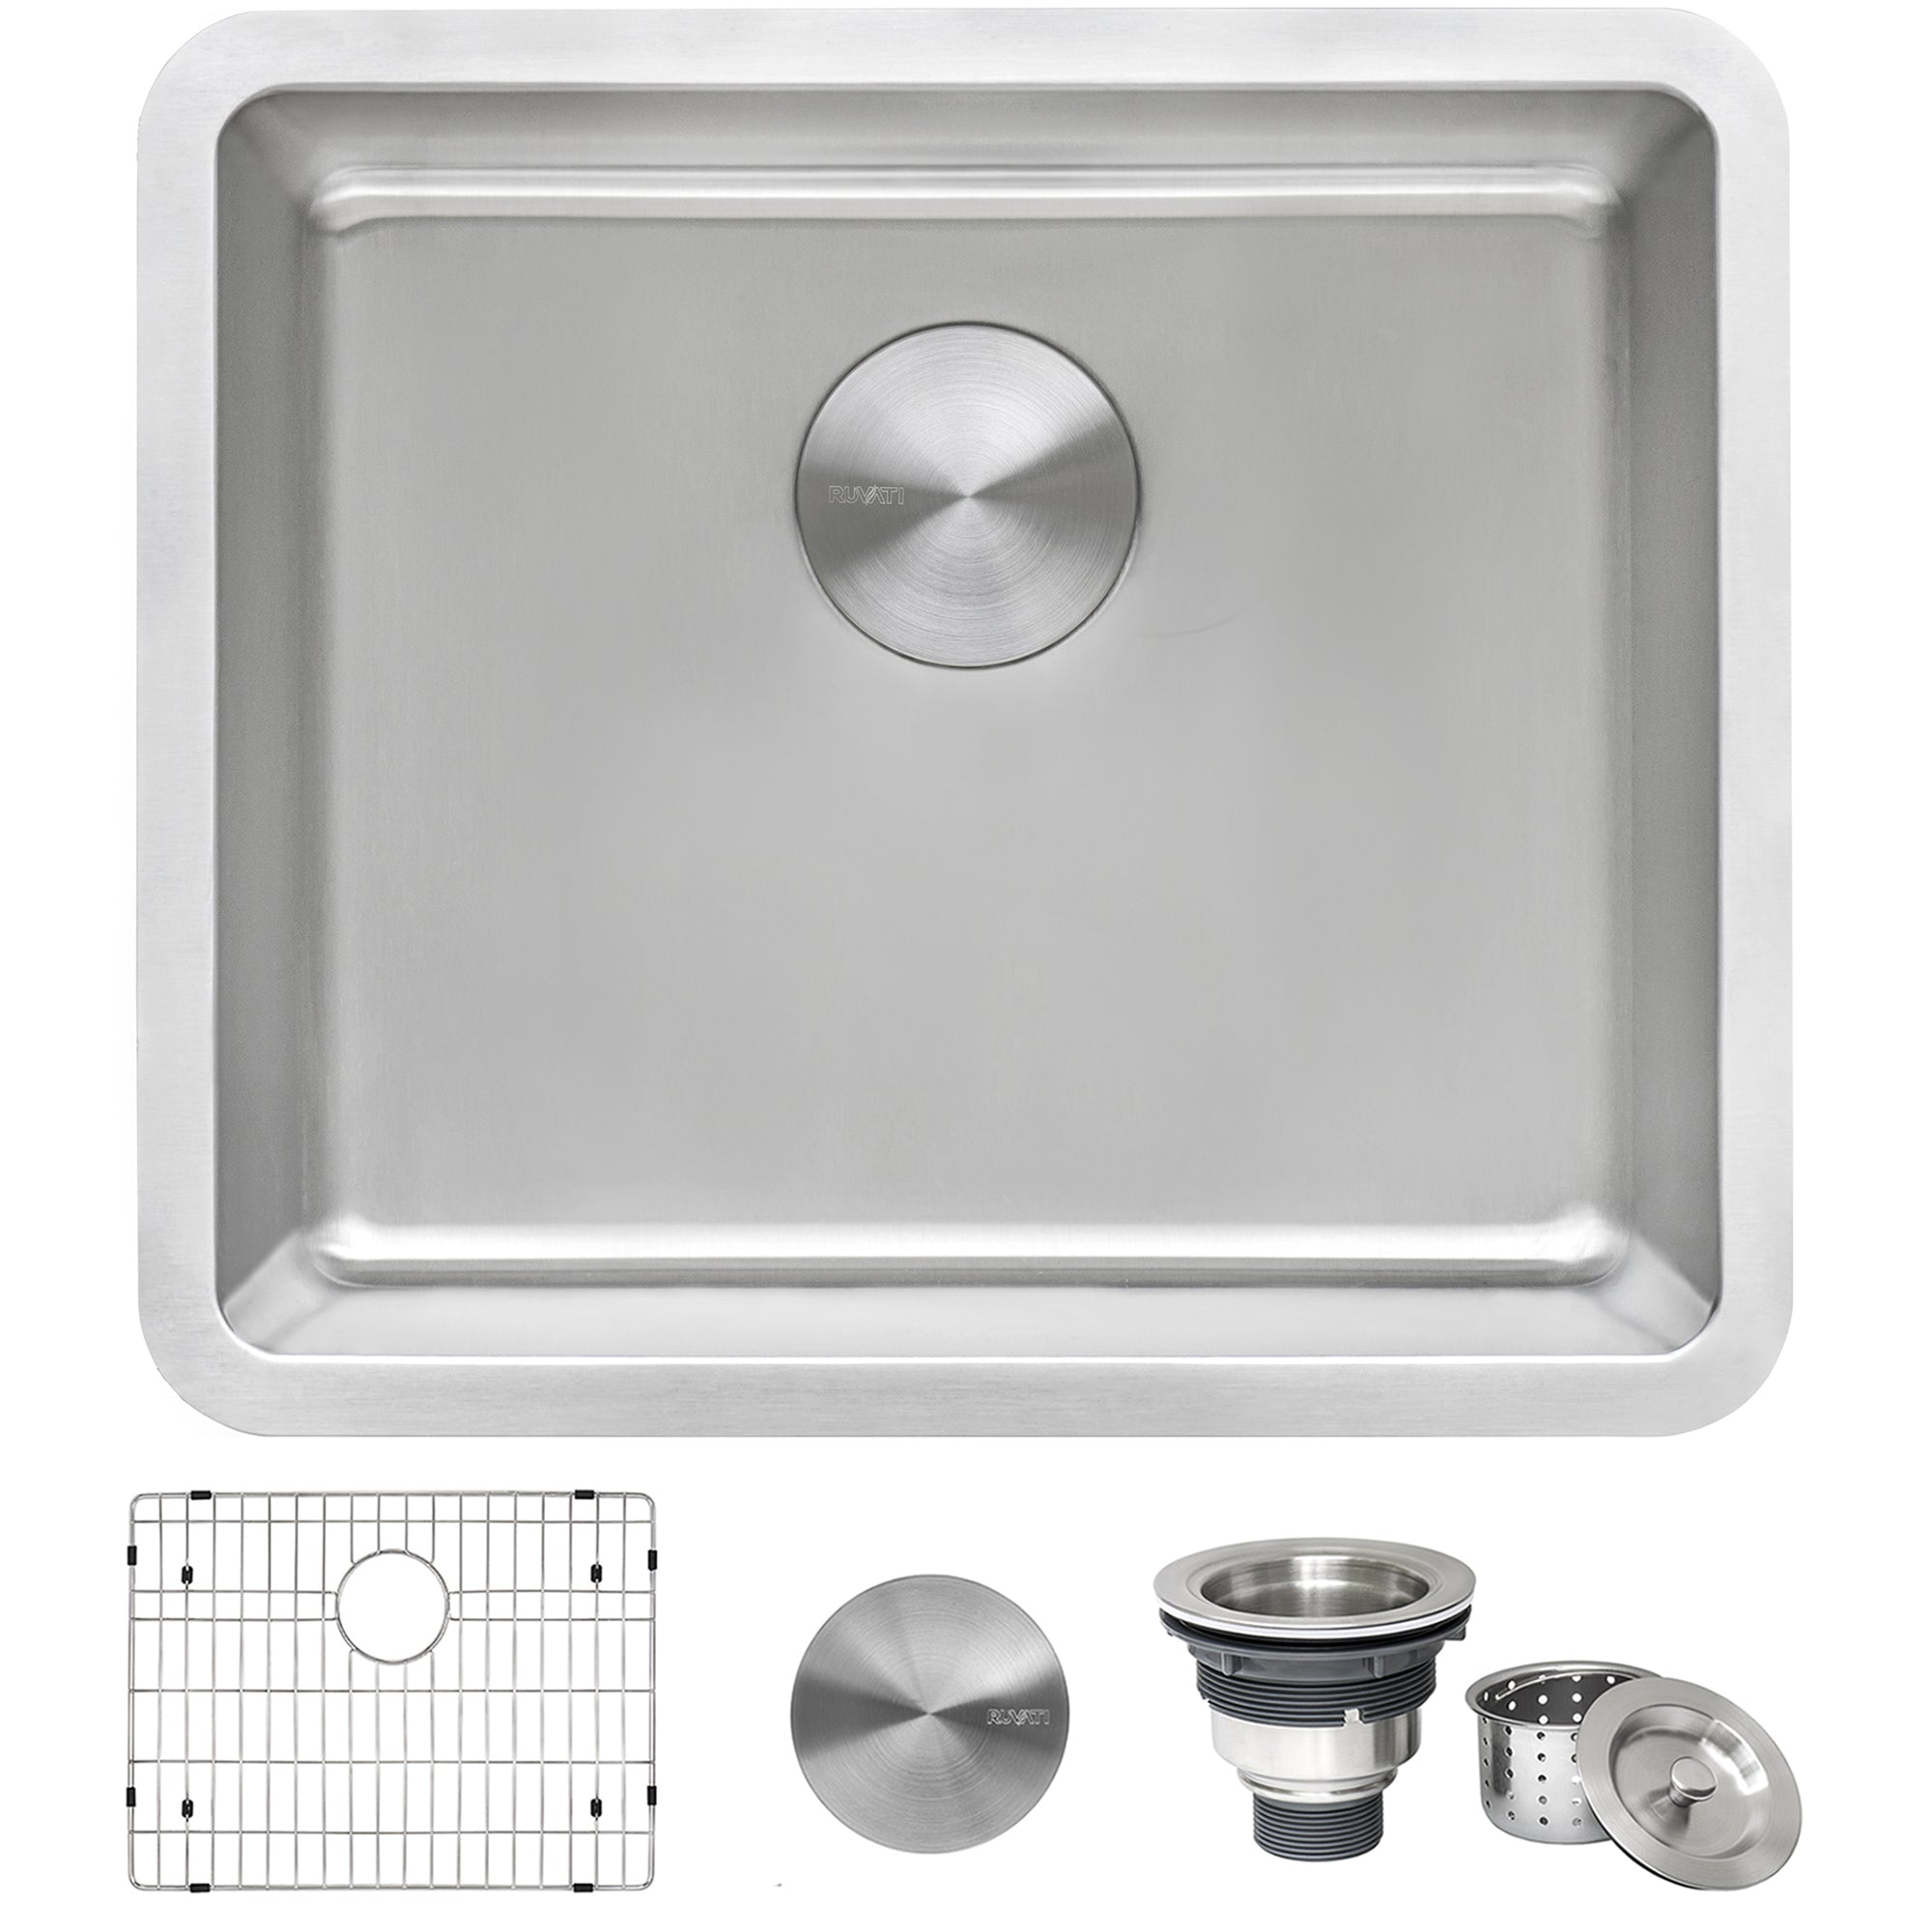 Undermount Bar Prep Kitchen Sink 16 Gauge Stainless Steel Single Bowl